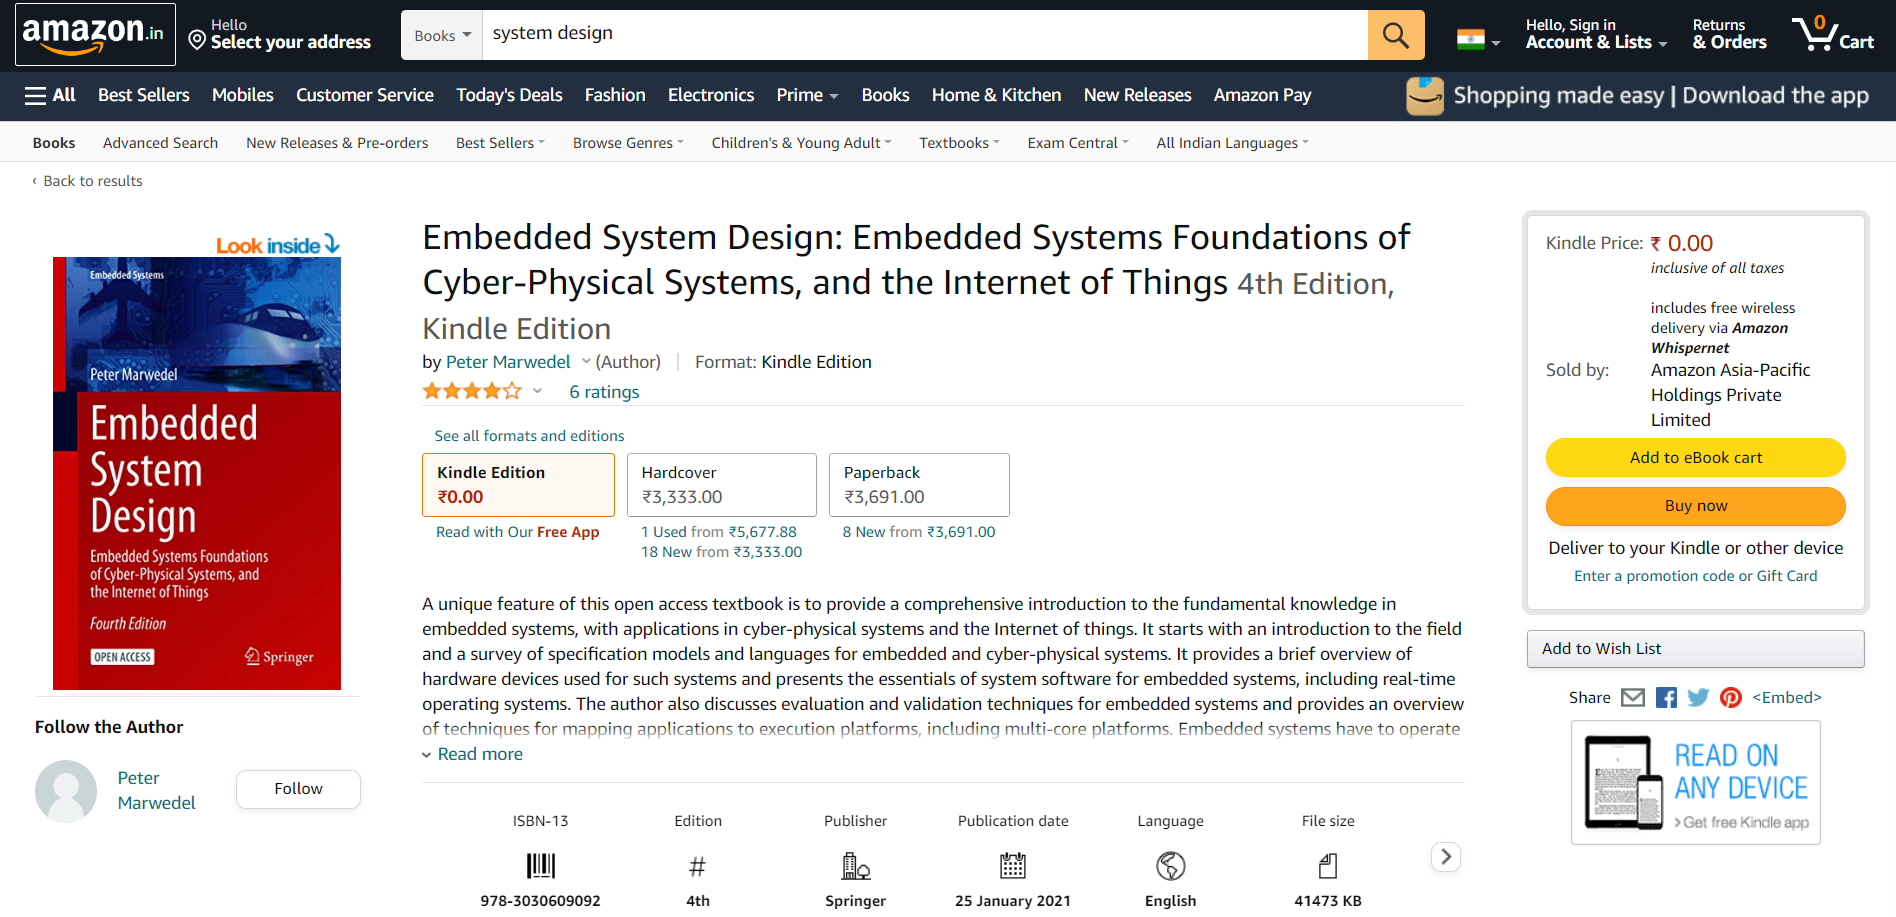 Embedded System Design